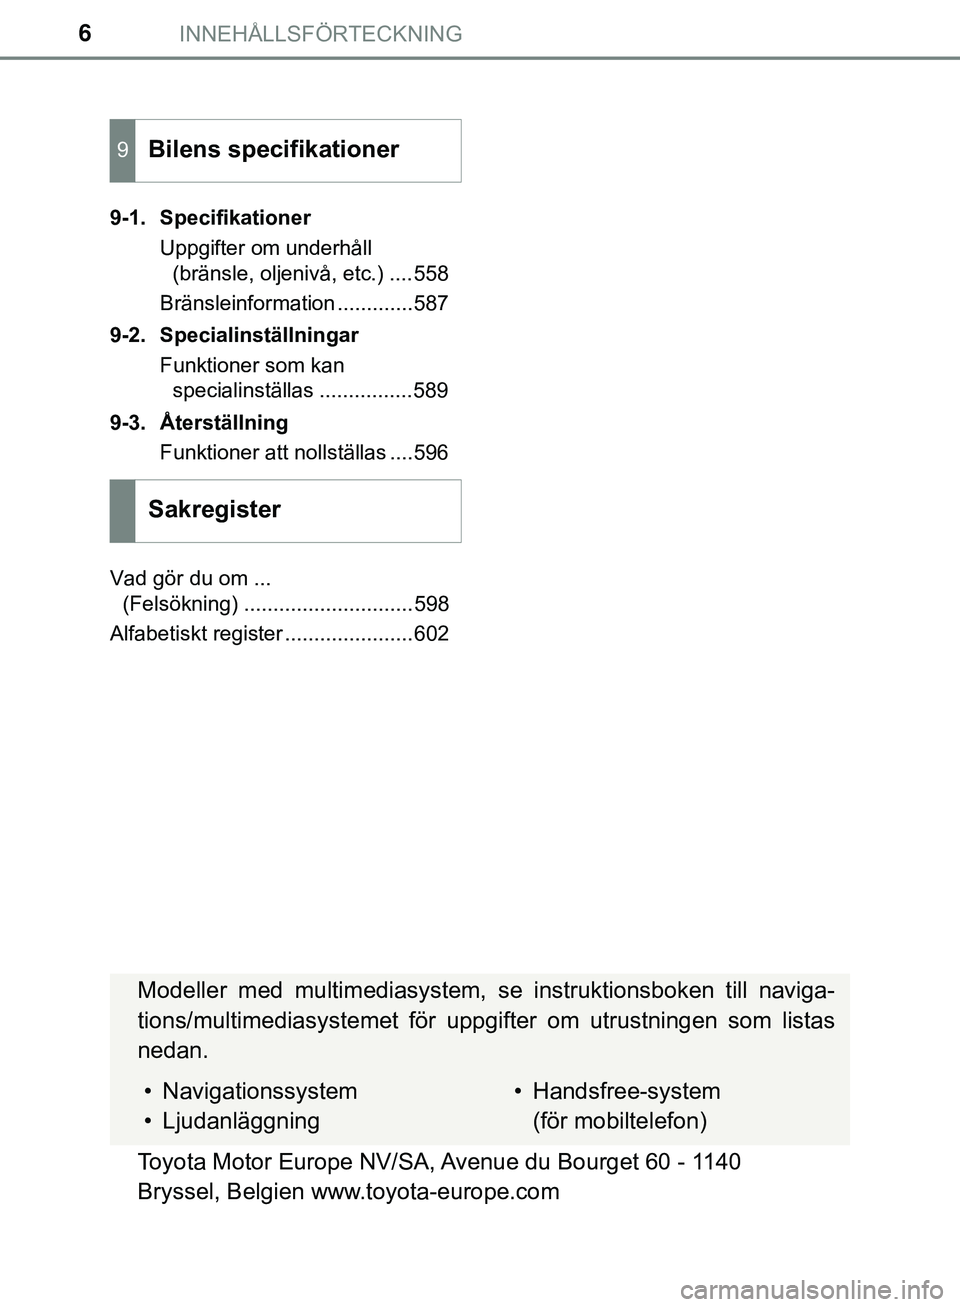 TOYOTA HILUX 2019  Bruksanvisningar (in Swedish) INNEHÅLLSFÖRTECKNING6
HILUX_OM_OM0K375SE9-1. Specifikationer
Uppgifter om underhåll (bränsle, oljenivå, etc.) ....558
Bränsleinformation .............587
9-2. Specialinställningar Funktioner so